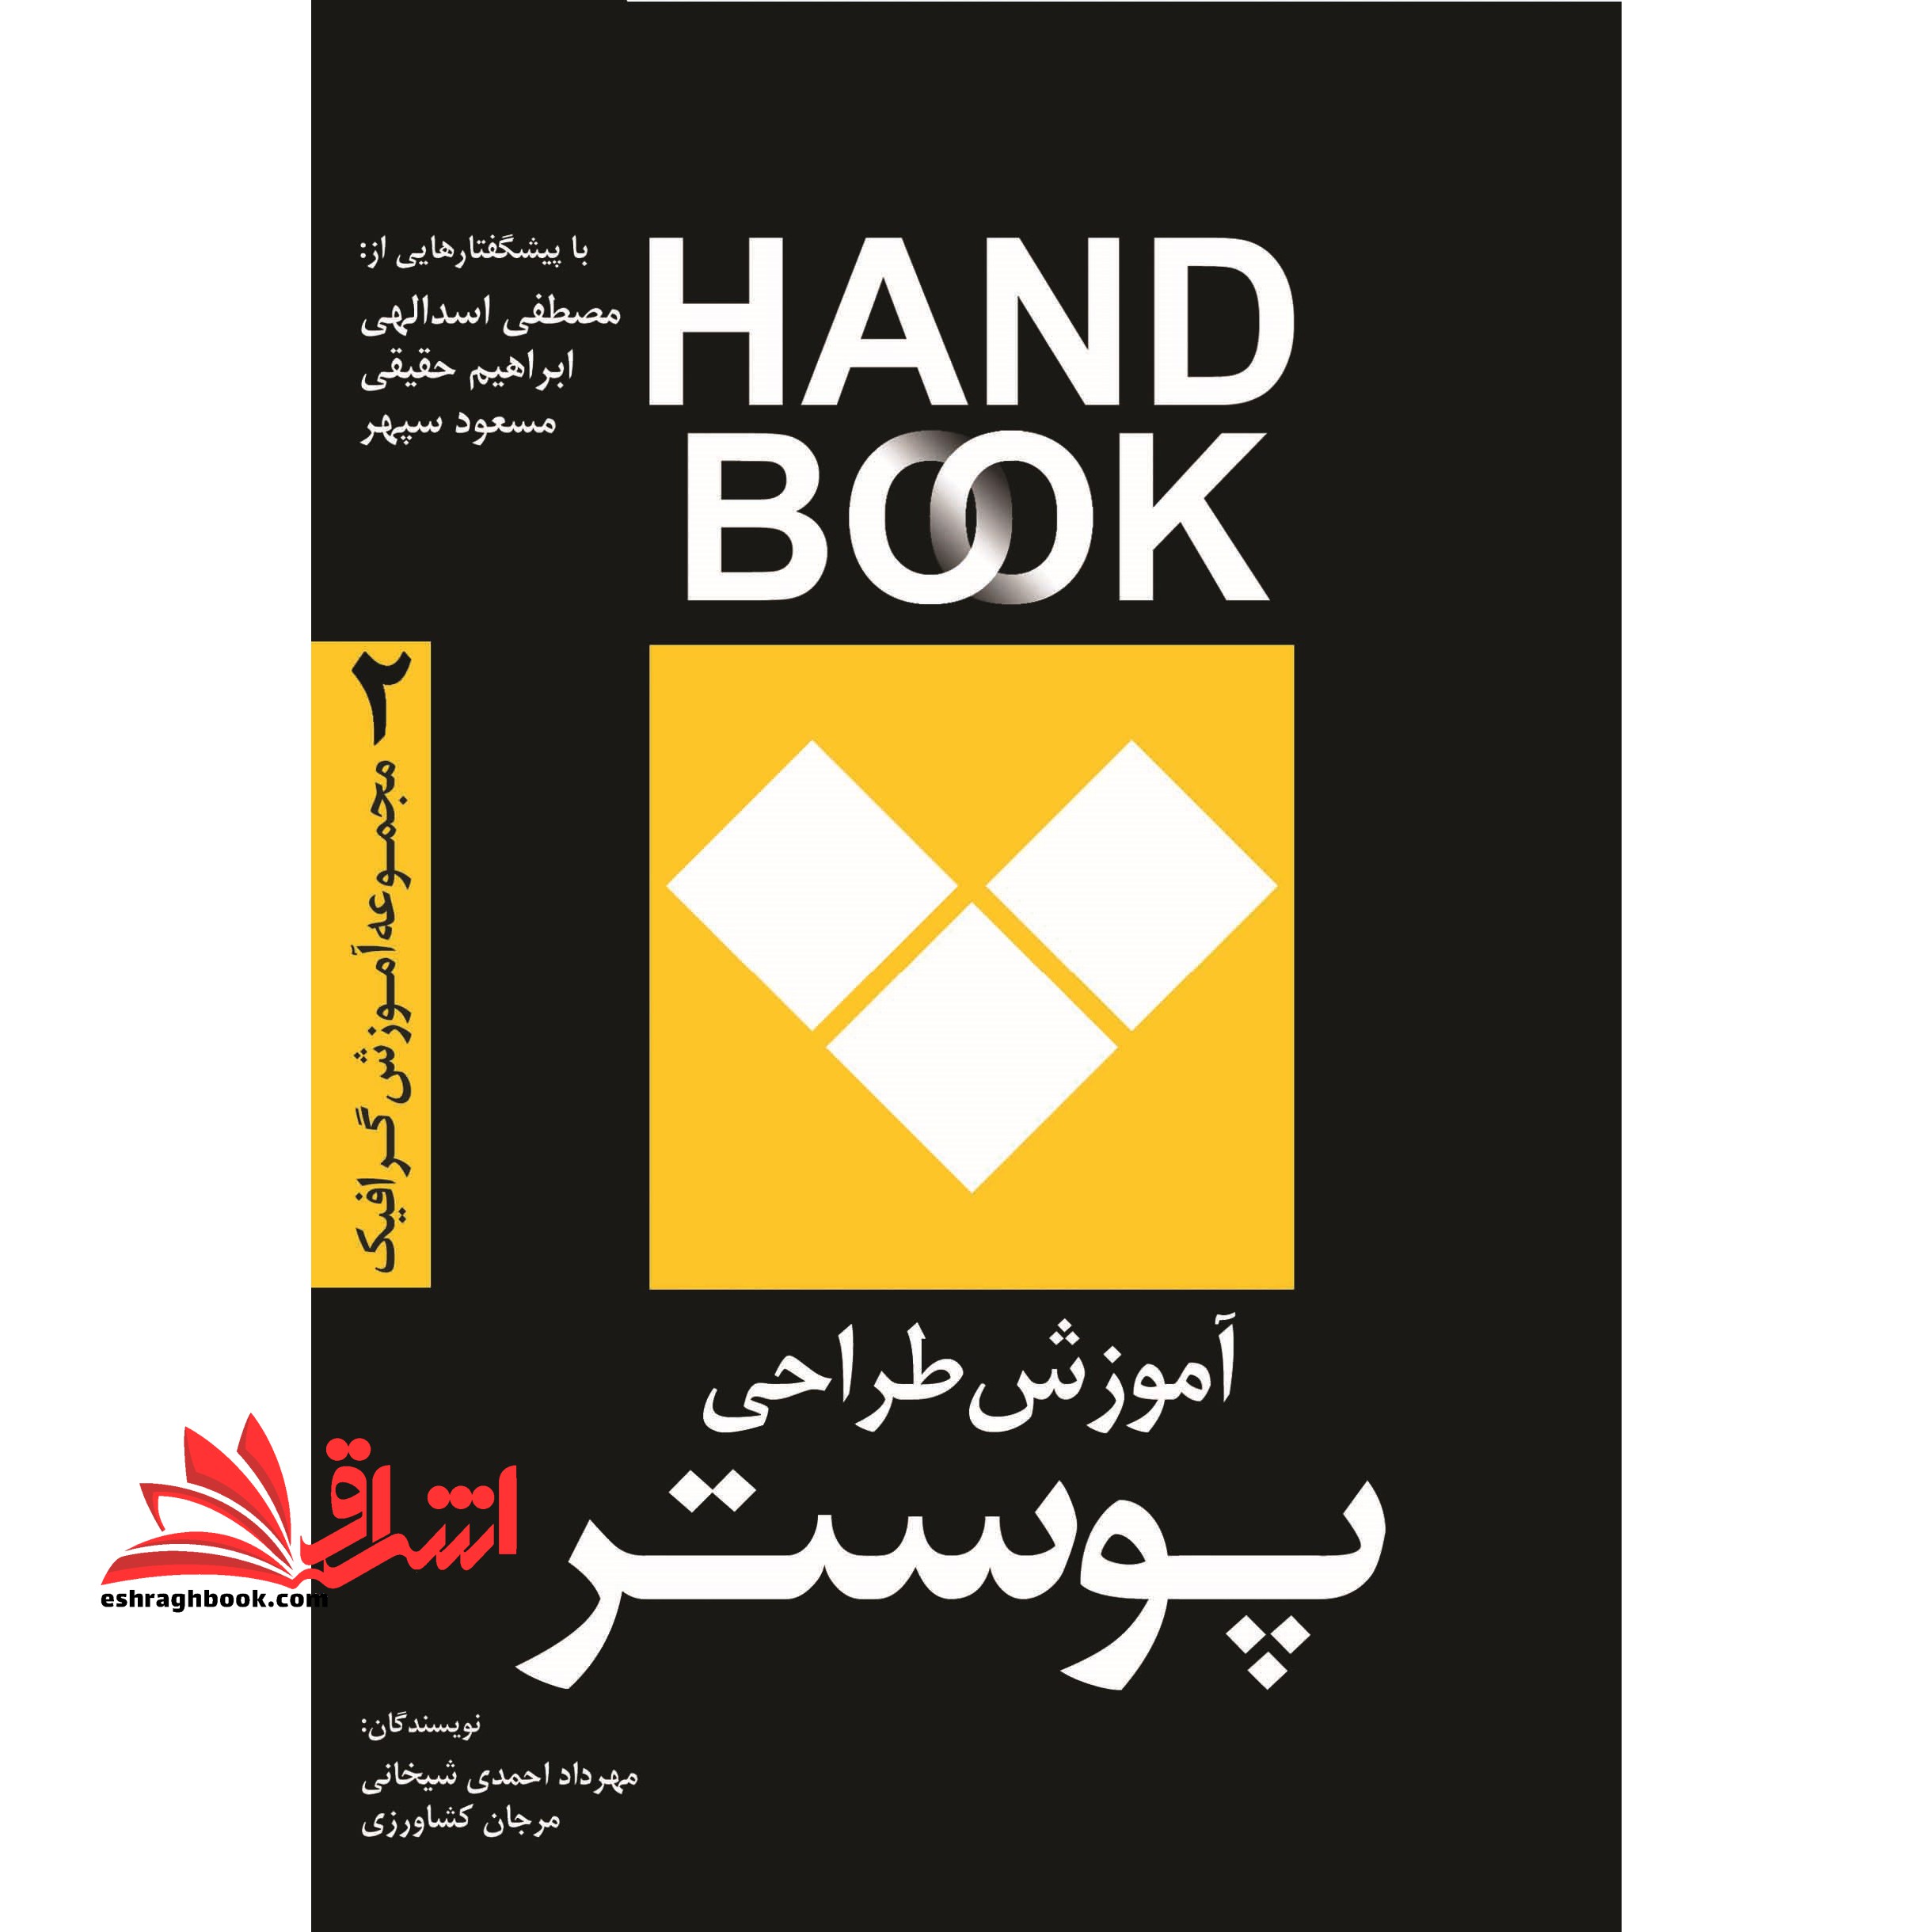 آموزش طراحی پوستر hand book